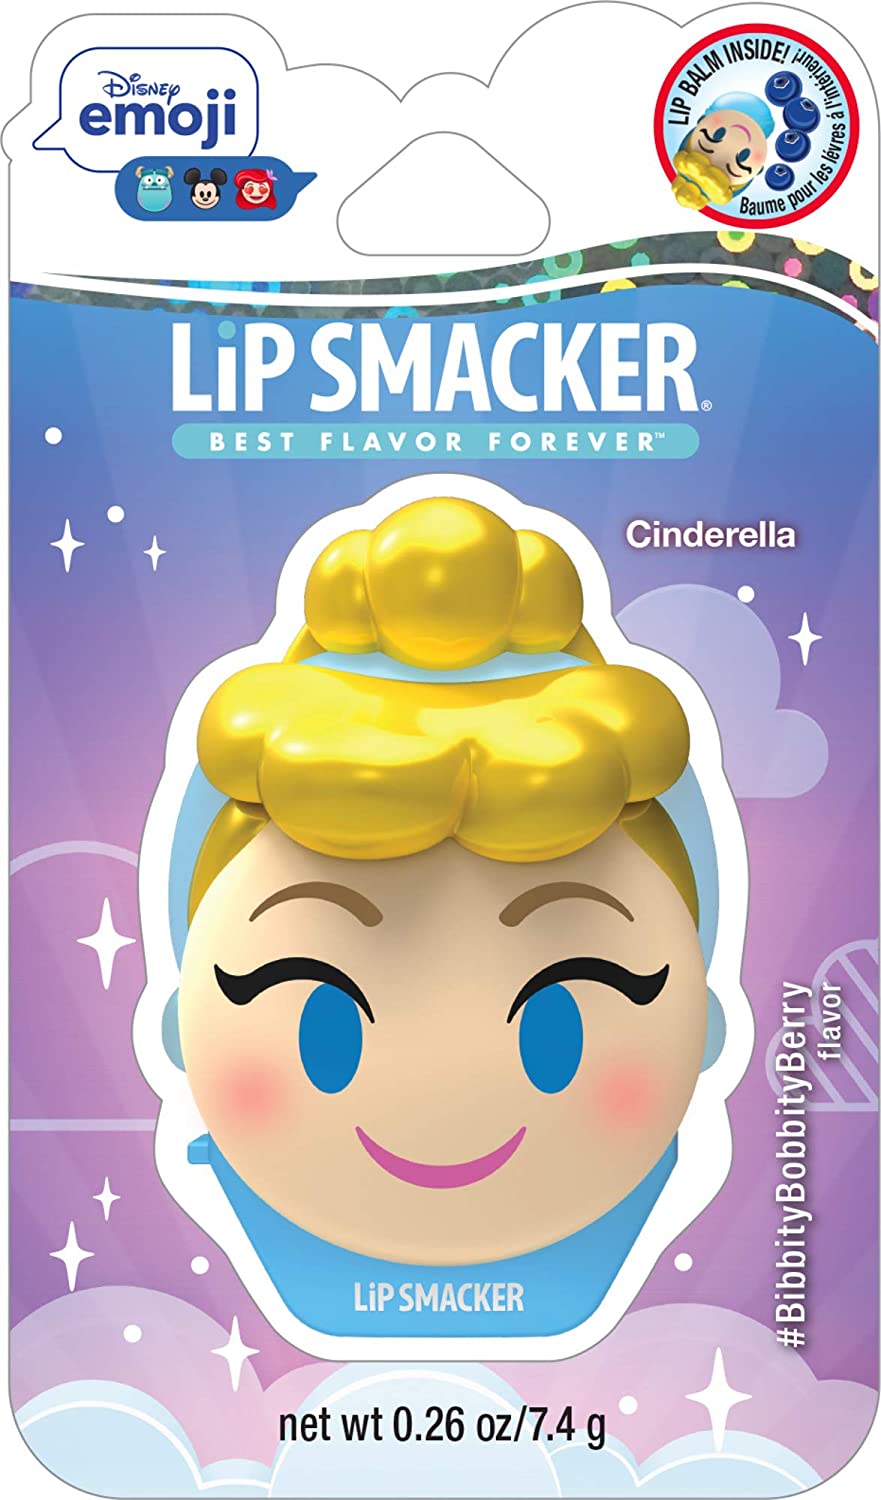 Disney Emoji Lip Smacker Cinderella #BibbityBobbityBerry Flavor 7.4 g